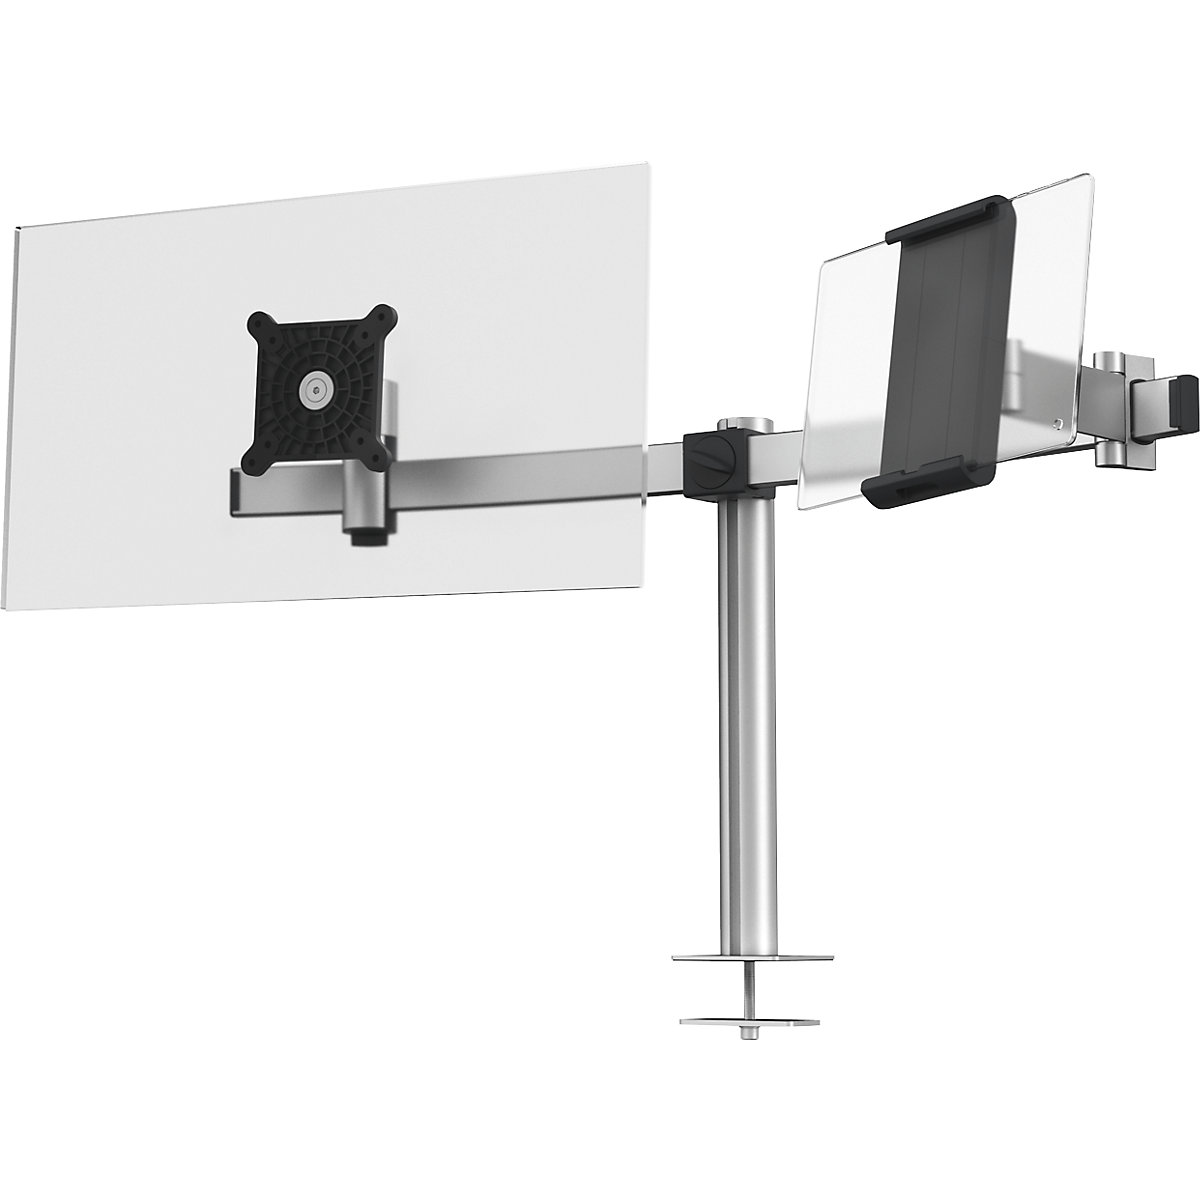 Ergotron LX Supporto da scrivania per monitor LCD Braccio alto